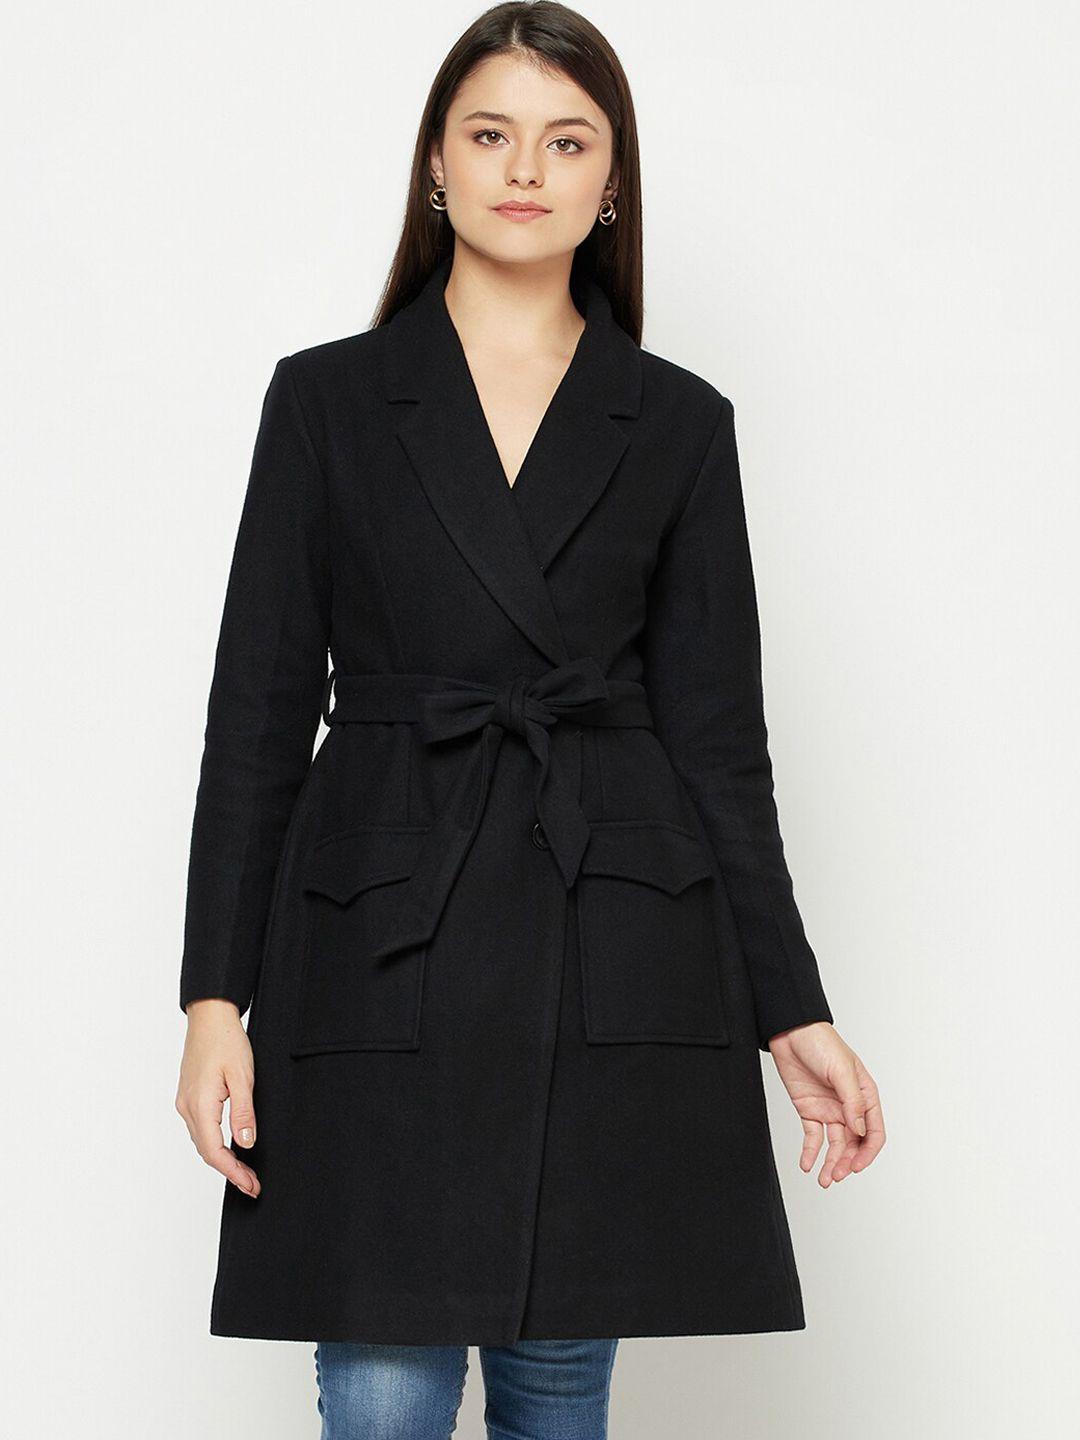 owncraft women black solid longline overcoat